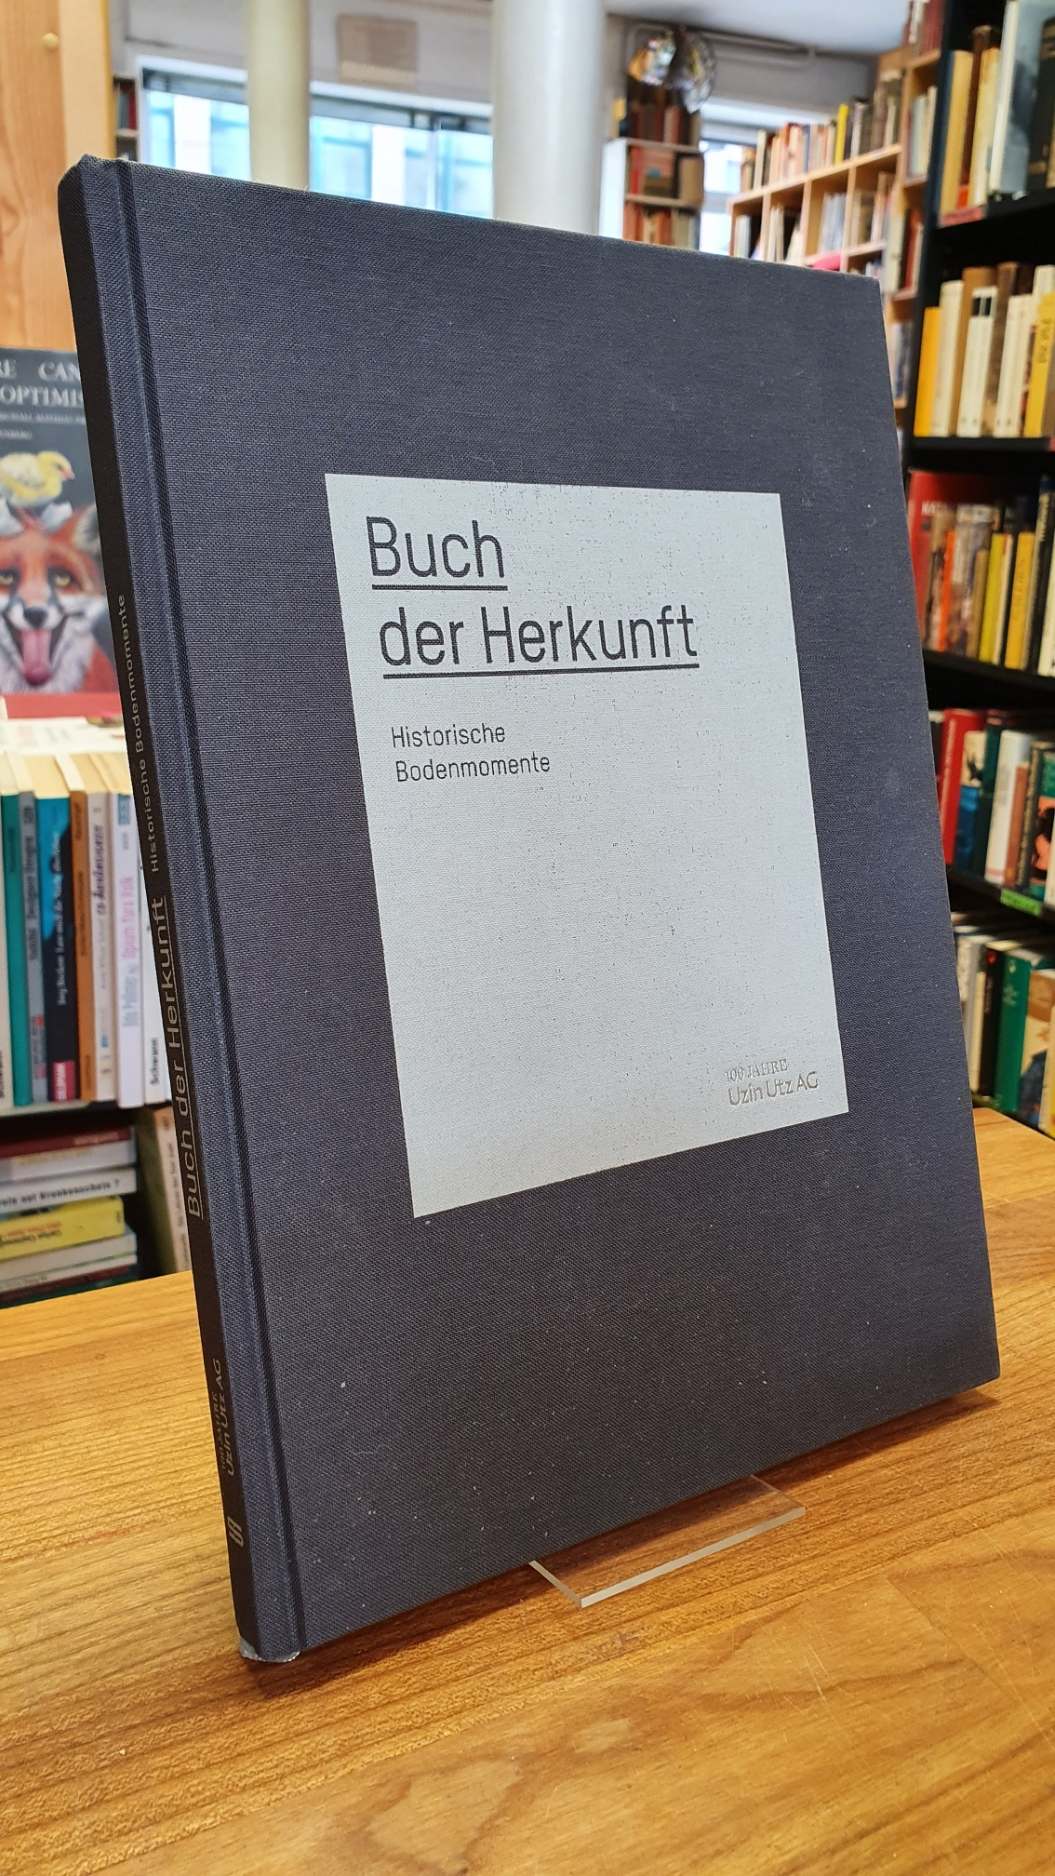 Uzin Utz Aktiengesellschaft (Hrsg.), Buch der Herkunft – Historische Bodenmoment